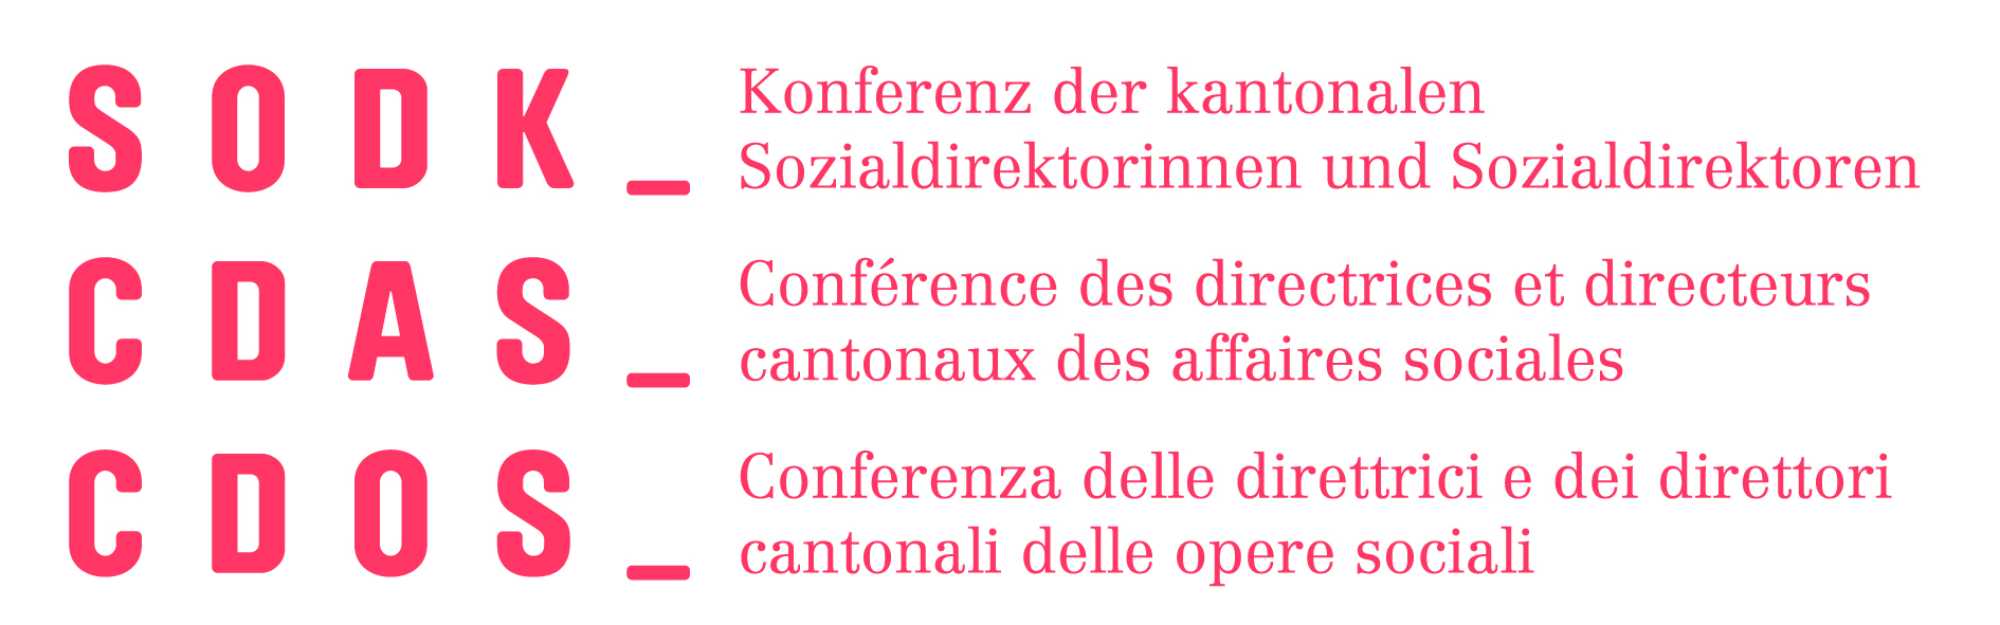 SODK – Konferenz der kantonalen Sozialdirektorinnen und Sozialdirektoren